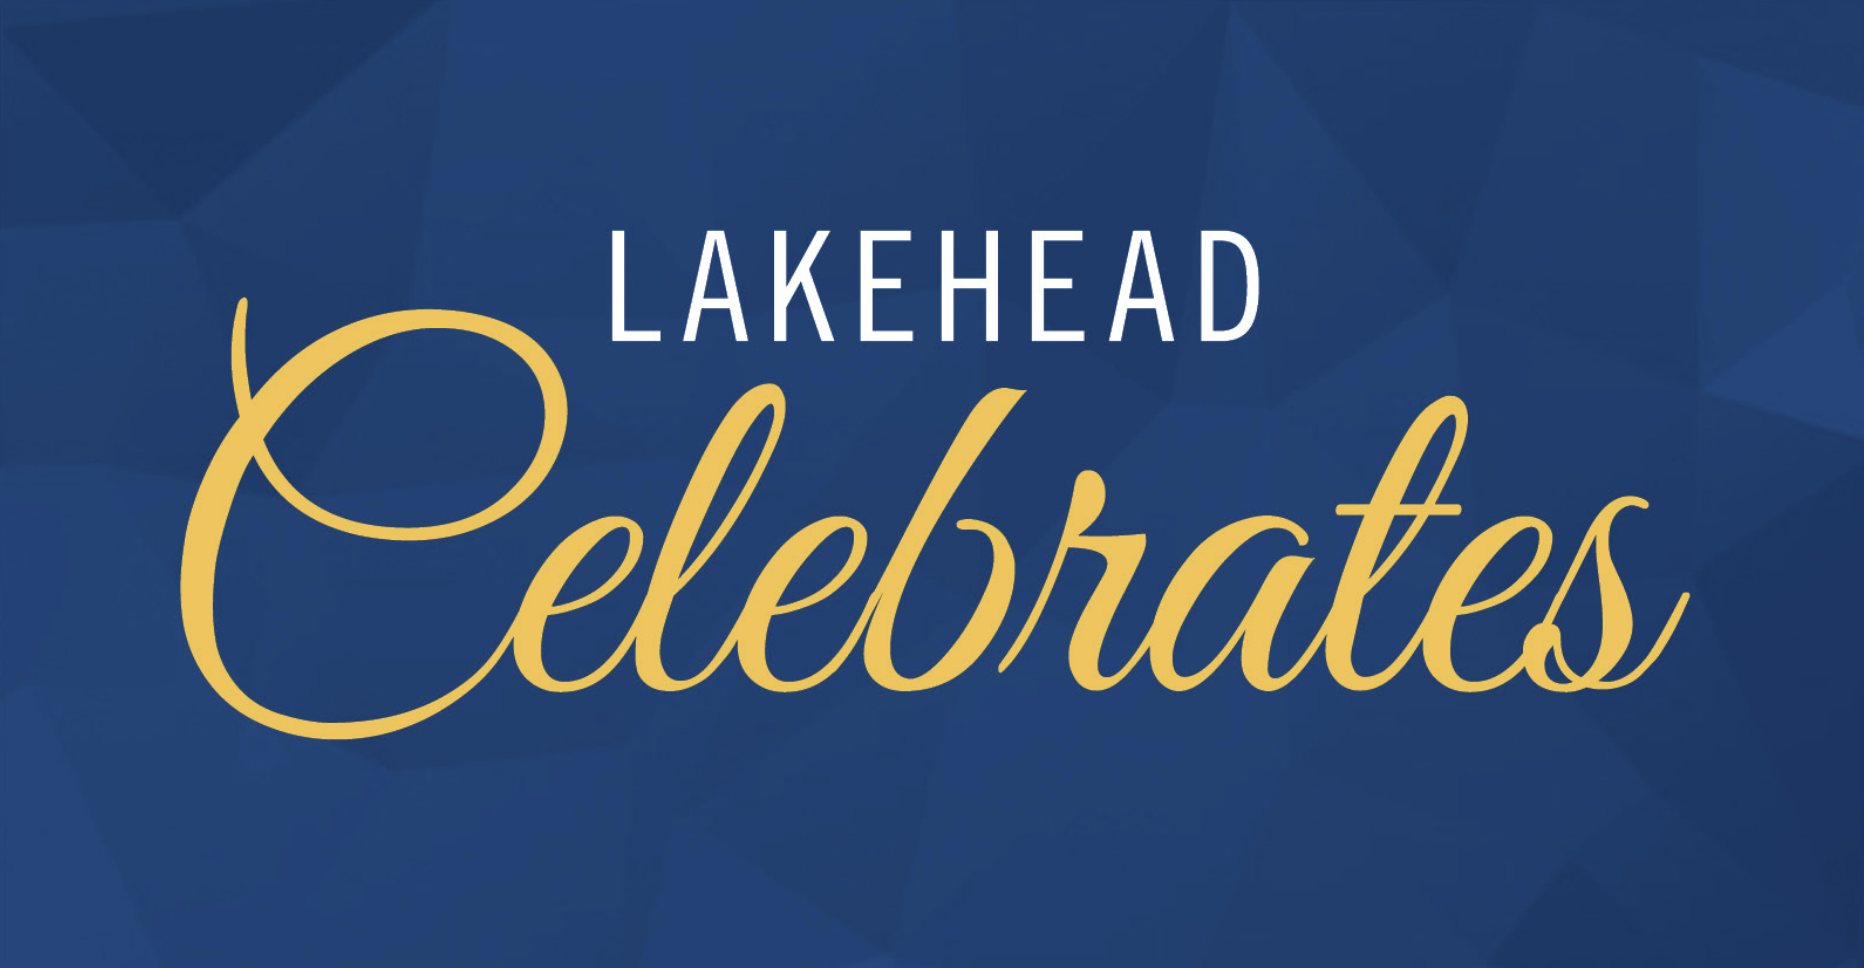 Lakehead Celebrates logo